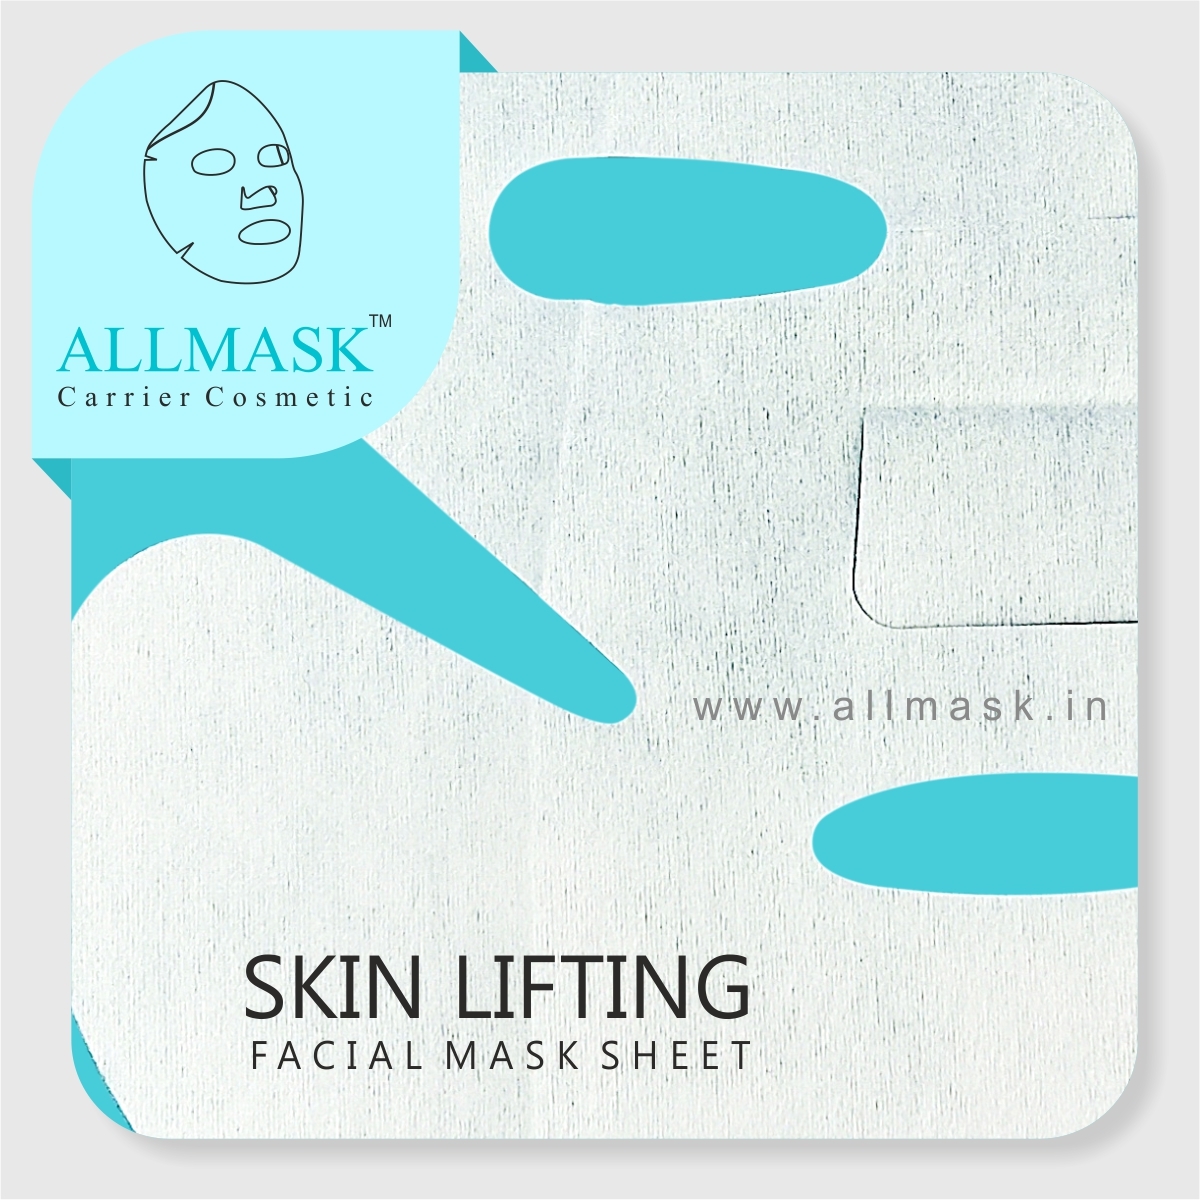 Skin Lifting Facial Mask Sheet - 100% Original - ODM/OEM Customization Available